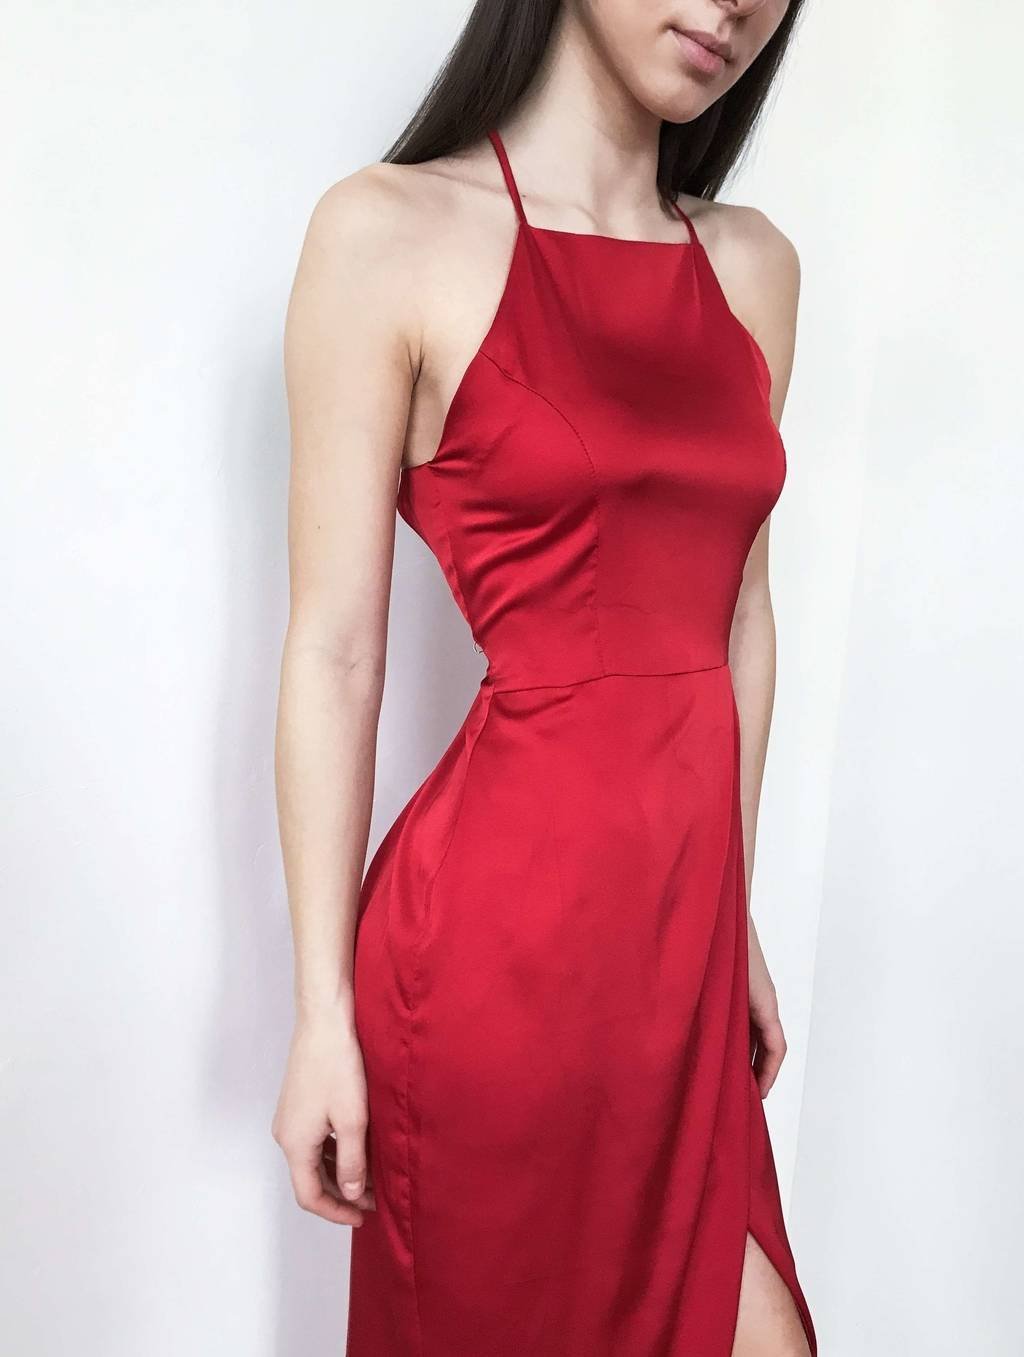 Красное шелковое платье